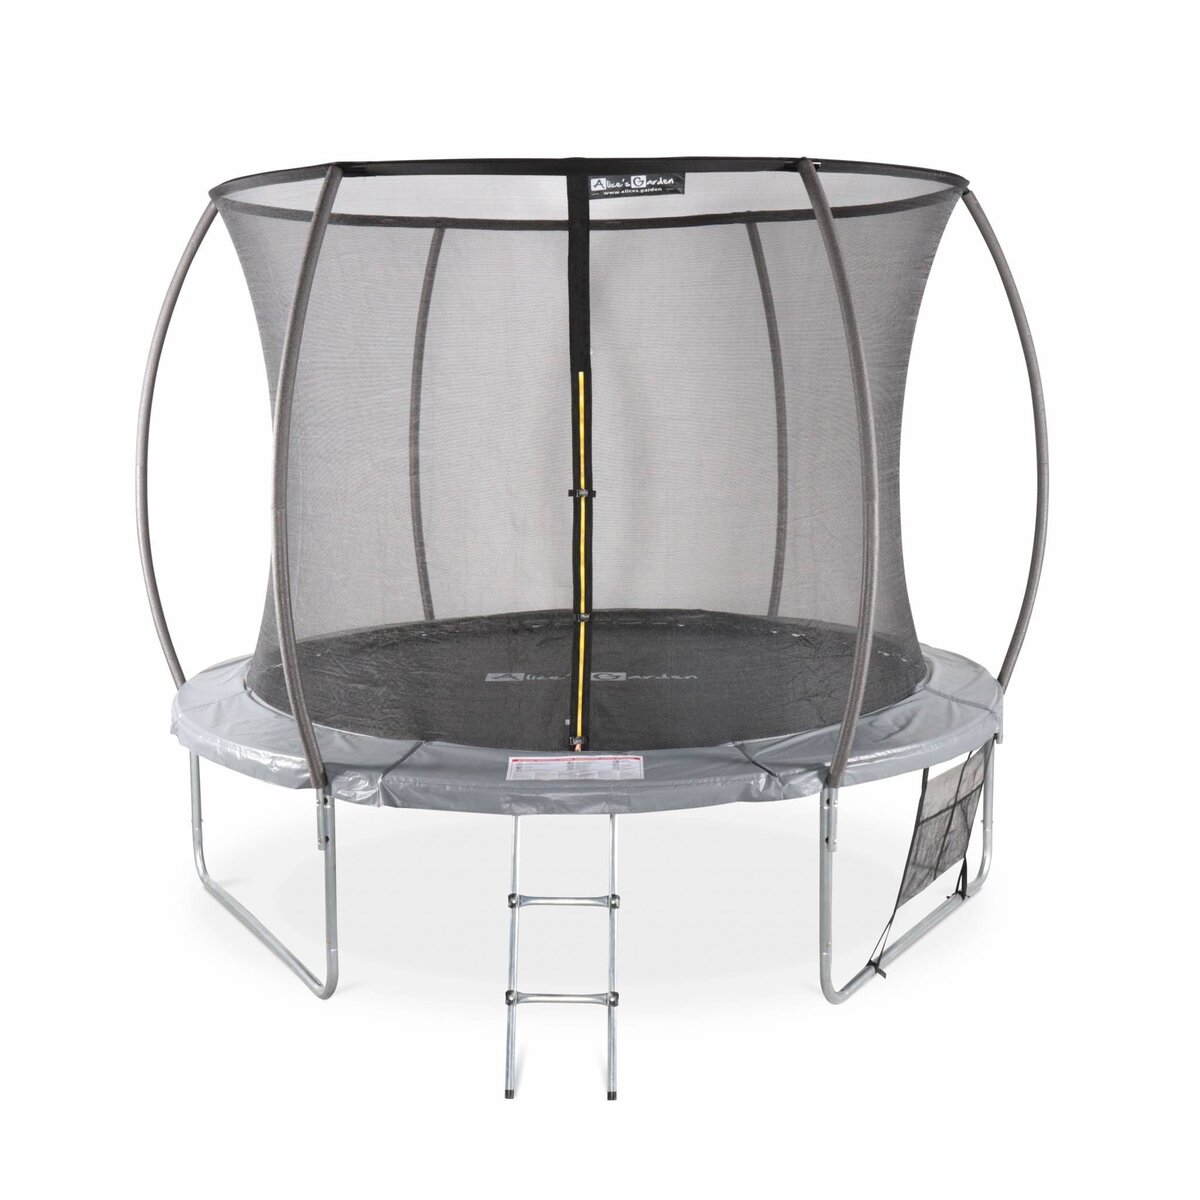 Kit d'ancrage pour trampoline : comment choisir